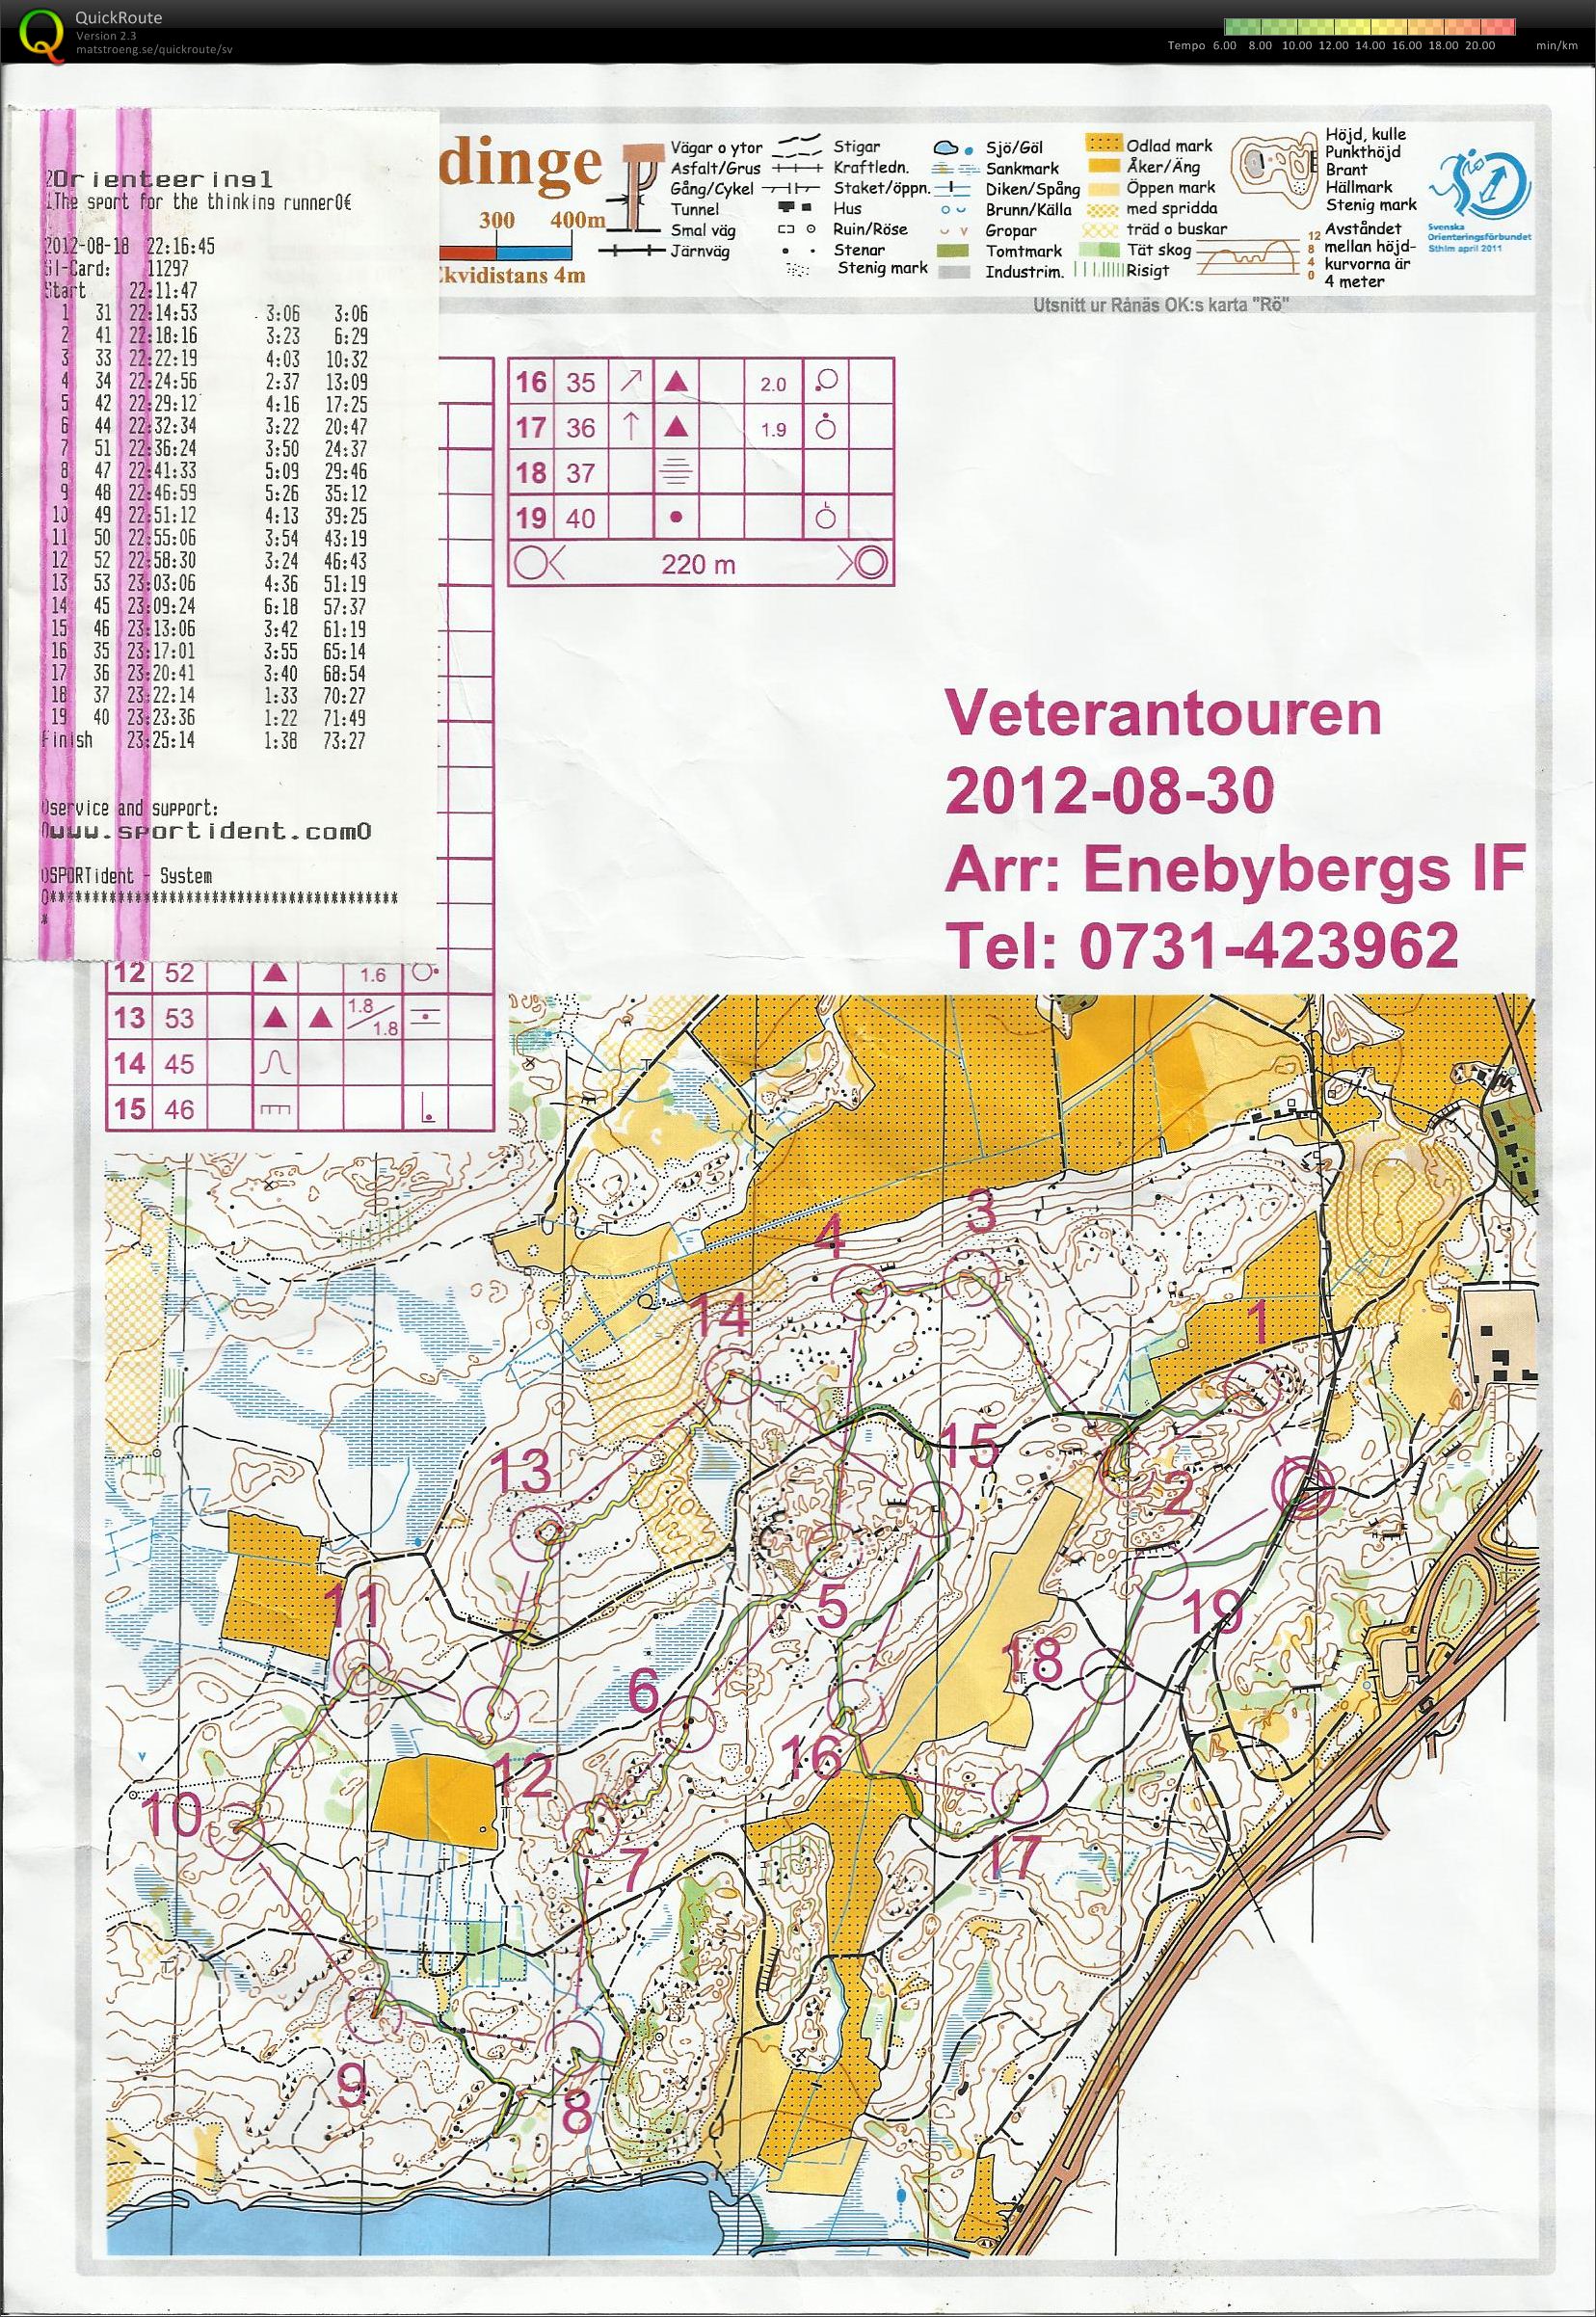 Veterantouren Enebyberg (30-08-2012)